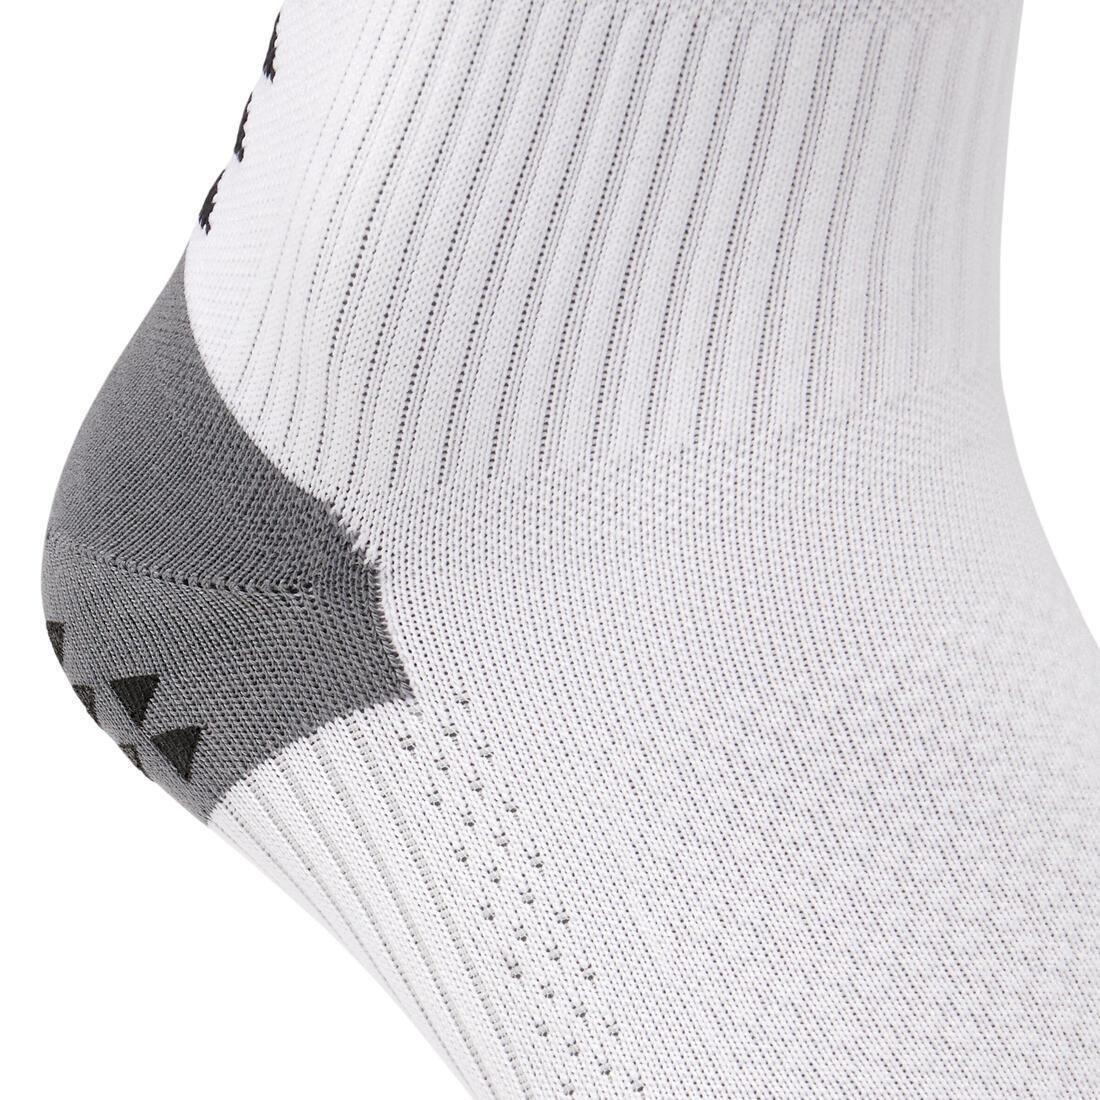 KIPSTA - Adult Short Non-Slip Football Socks Viralto Mid, Black